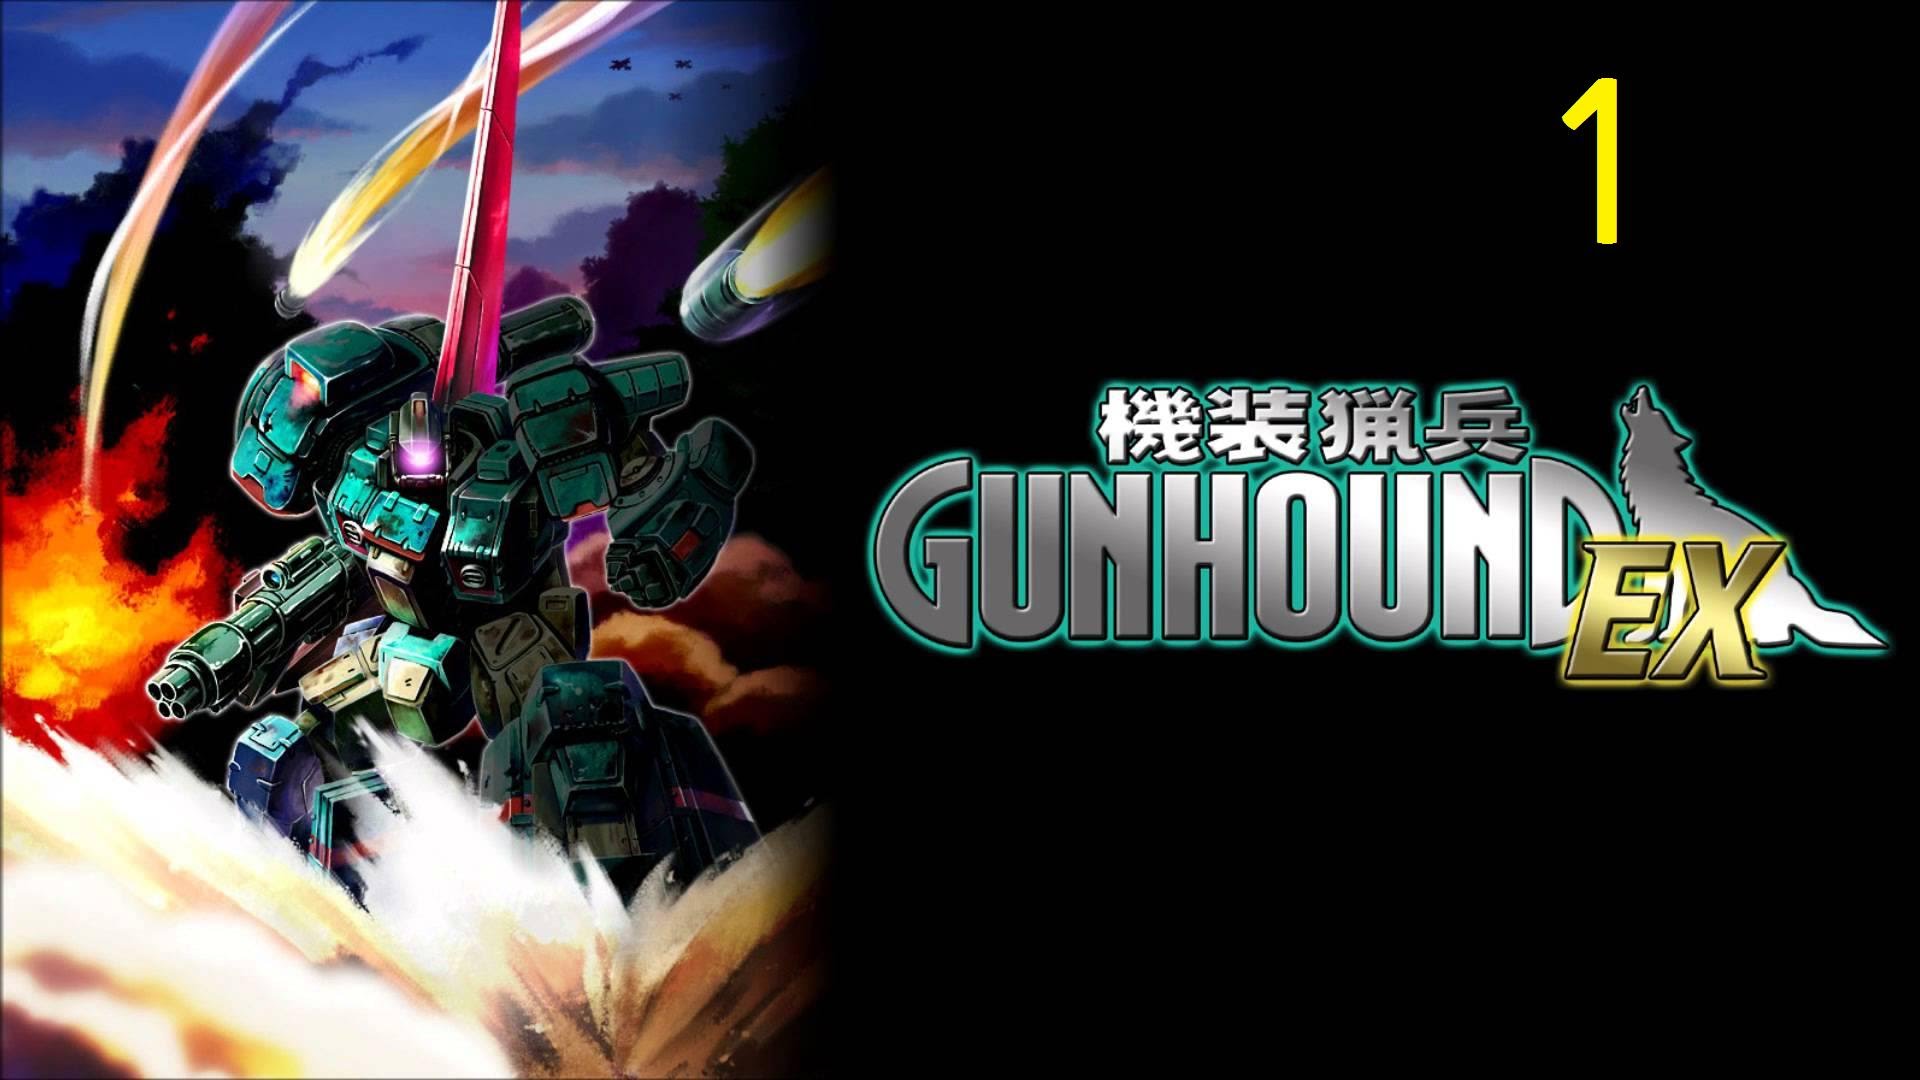 Armored Hunter GUNHOUND EX HD wallpapers, Desktop wallpaper - most viewed